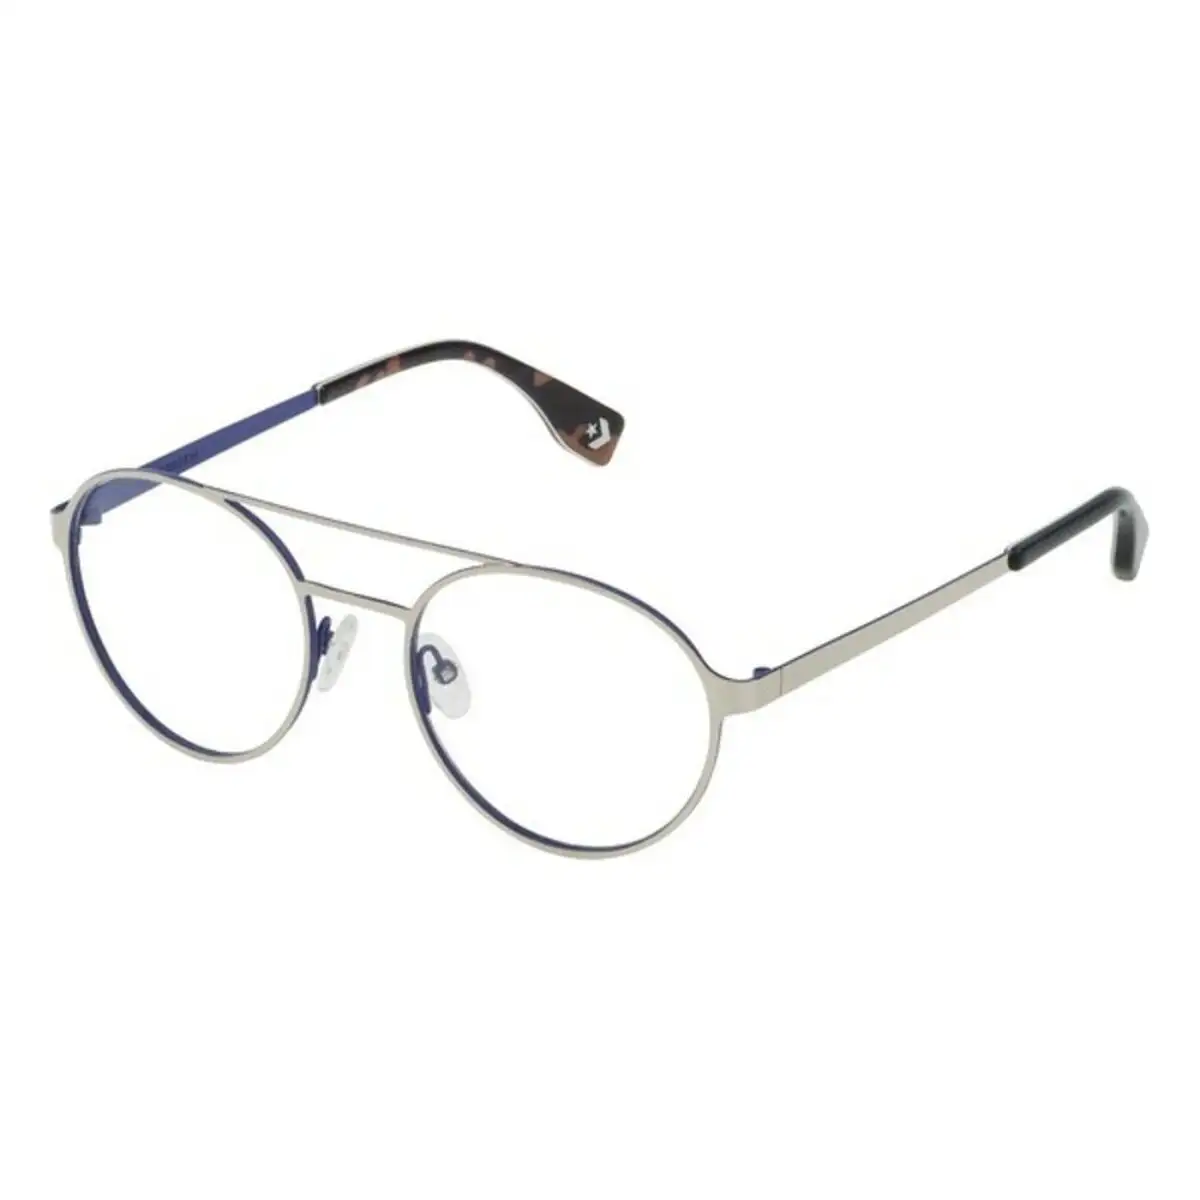 Monture de lunettes homme converse vco068q500e70 bleu o 50 mm _5681. DIAYTAR SENEGAL - L'Art du Shopping Facilité. Naviguez sur notre plateforme en ligne pour découvrir une expérience d'achat fluide et agréable, avec une gamme de produits adaptés à tous.